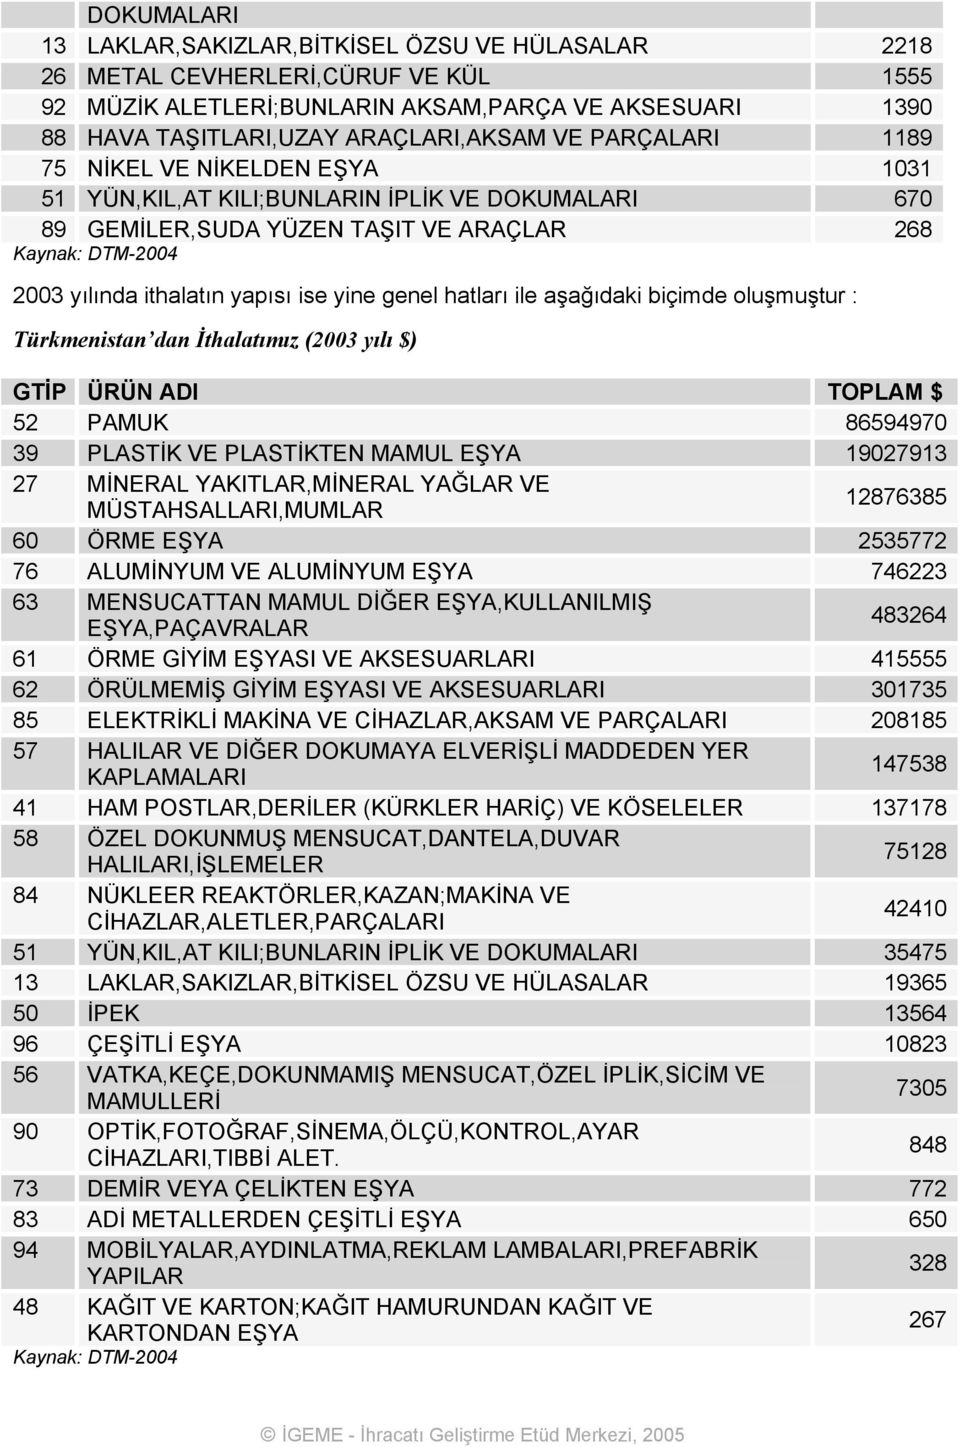 genel hatları ile aşağıdaki biçimde oluşmuştur : Türkmenistan dan İthalatımız (2003 yılı $) GTİP ÜRÜN ADI TOPLAM $ 52 PAMUK 86594970 39 PLASTİK VE PLASTİKTEN MAMUL EŞYA 19027913 27 MİNERAL